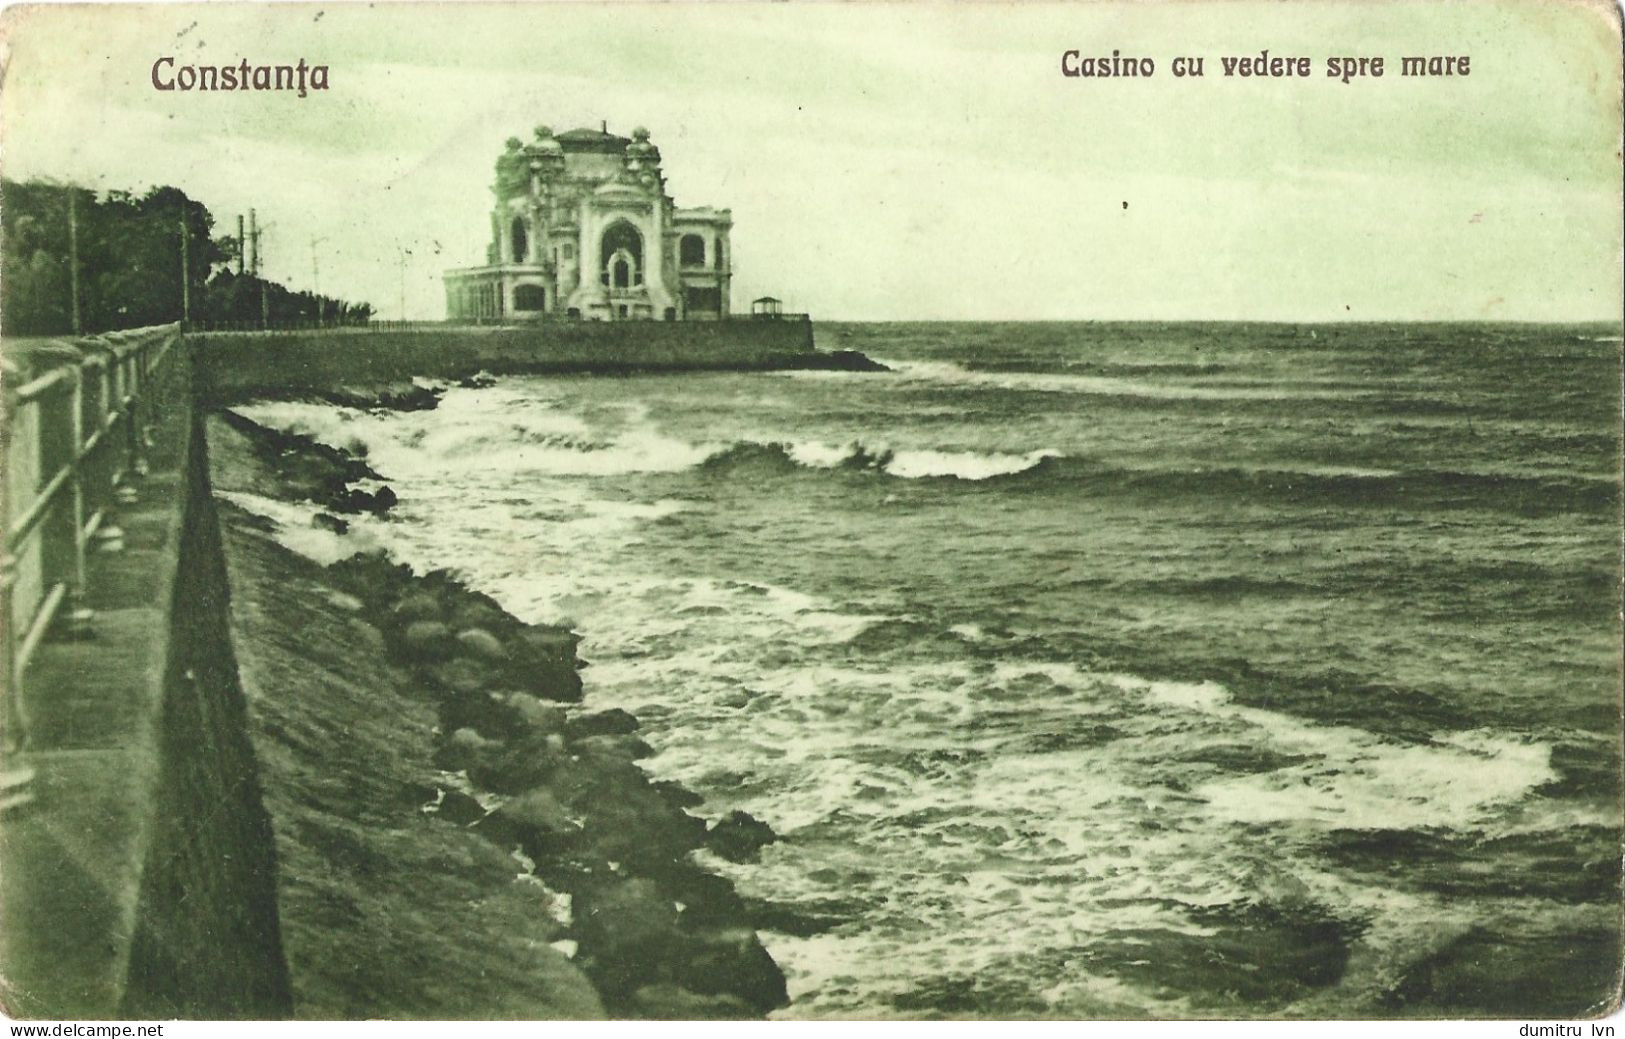 ROMANIA 1926 CONSTANTA - CASINO WITH SEA VIEW, BUILDING, ARCHITECTURE, CLIFF, SEASIDE - Romania